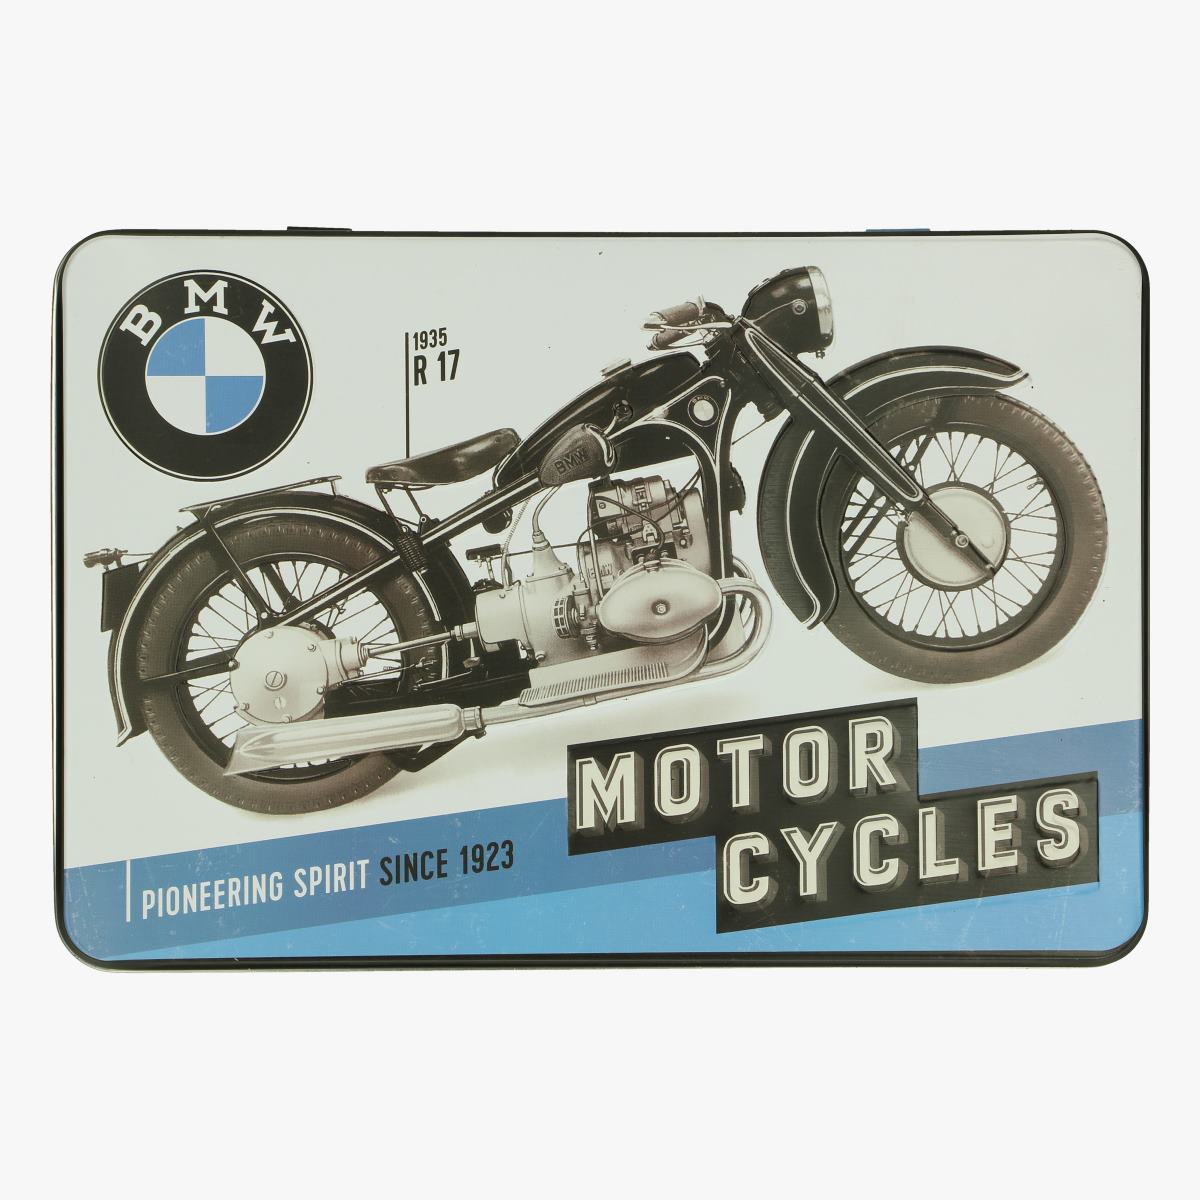 Afbeeldingen van blikken doos BMW moto cycles repro